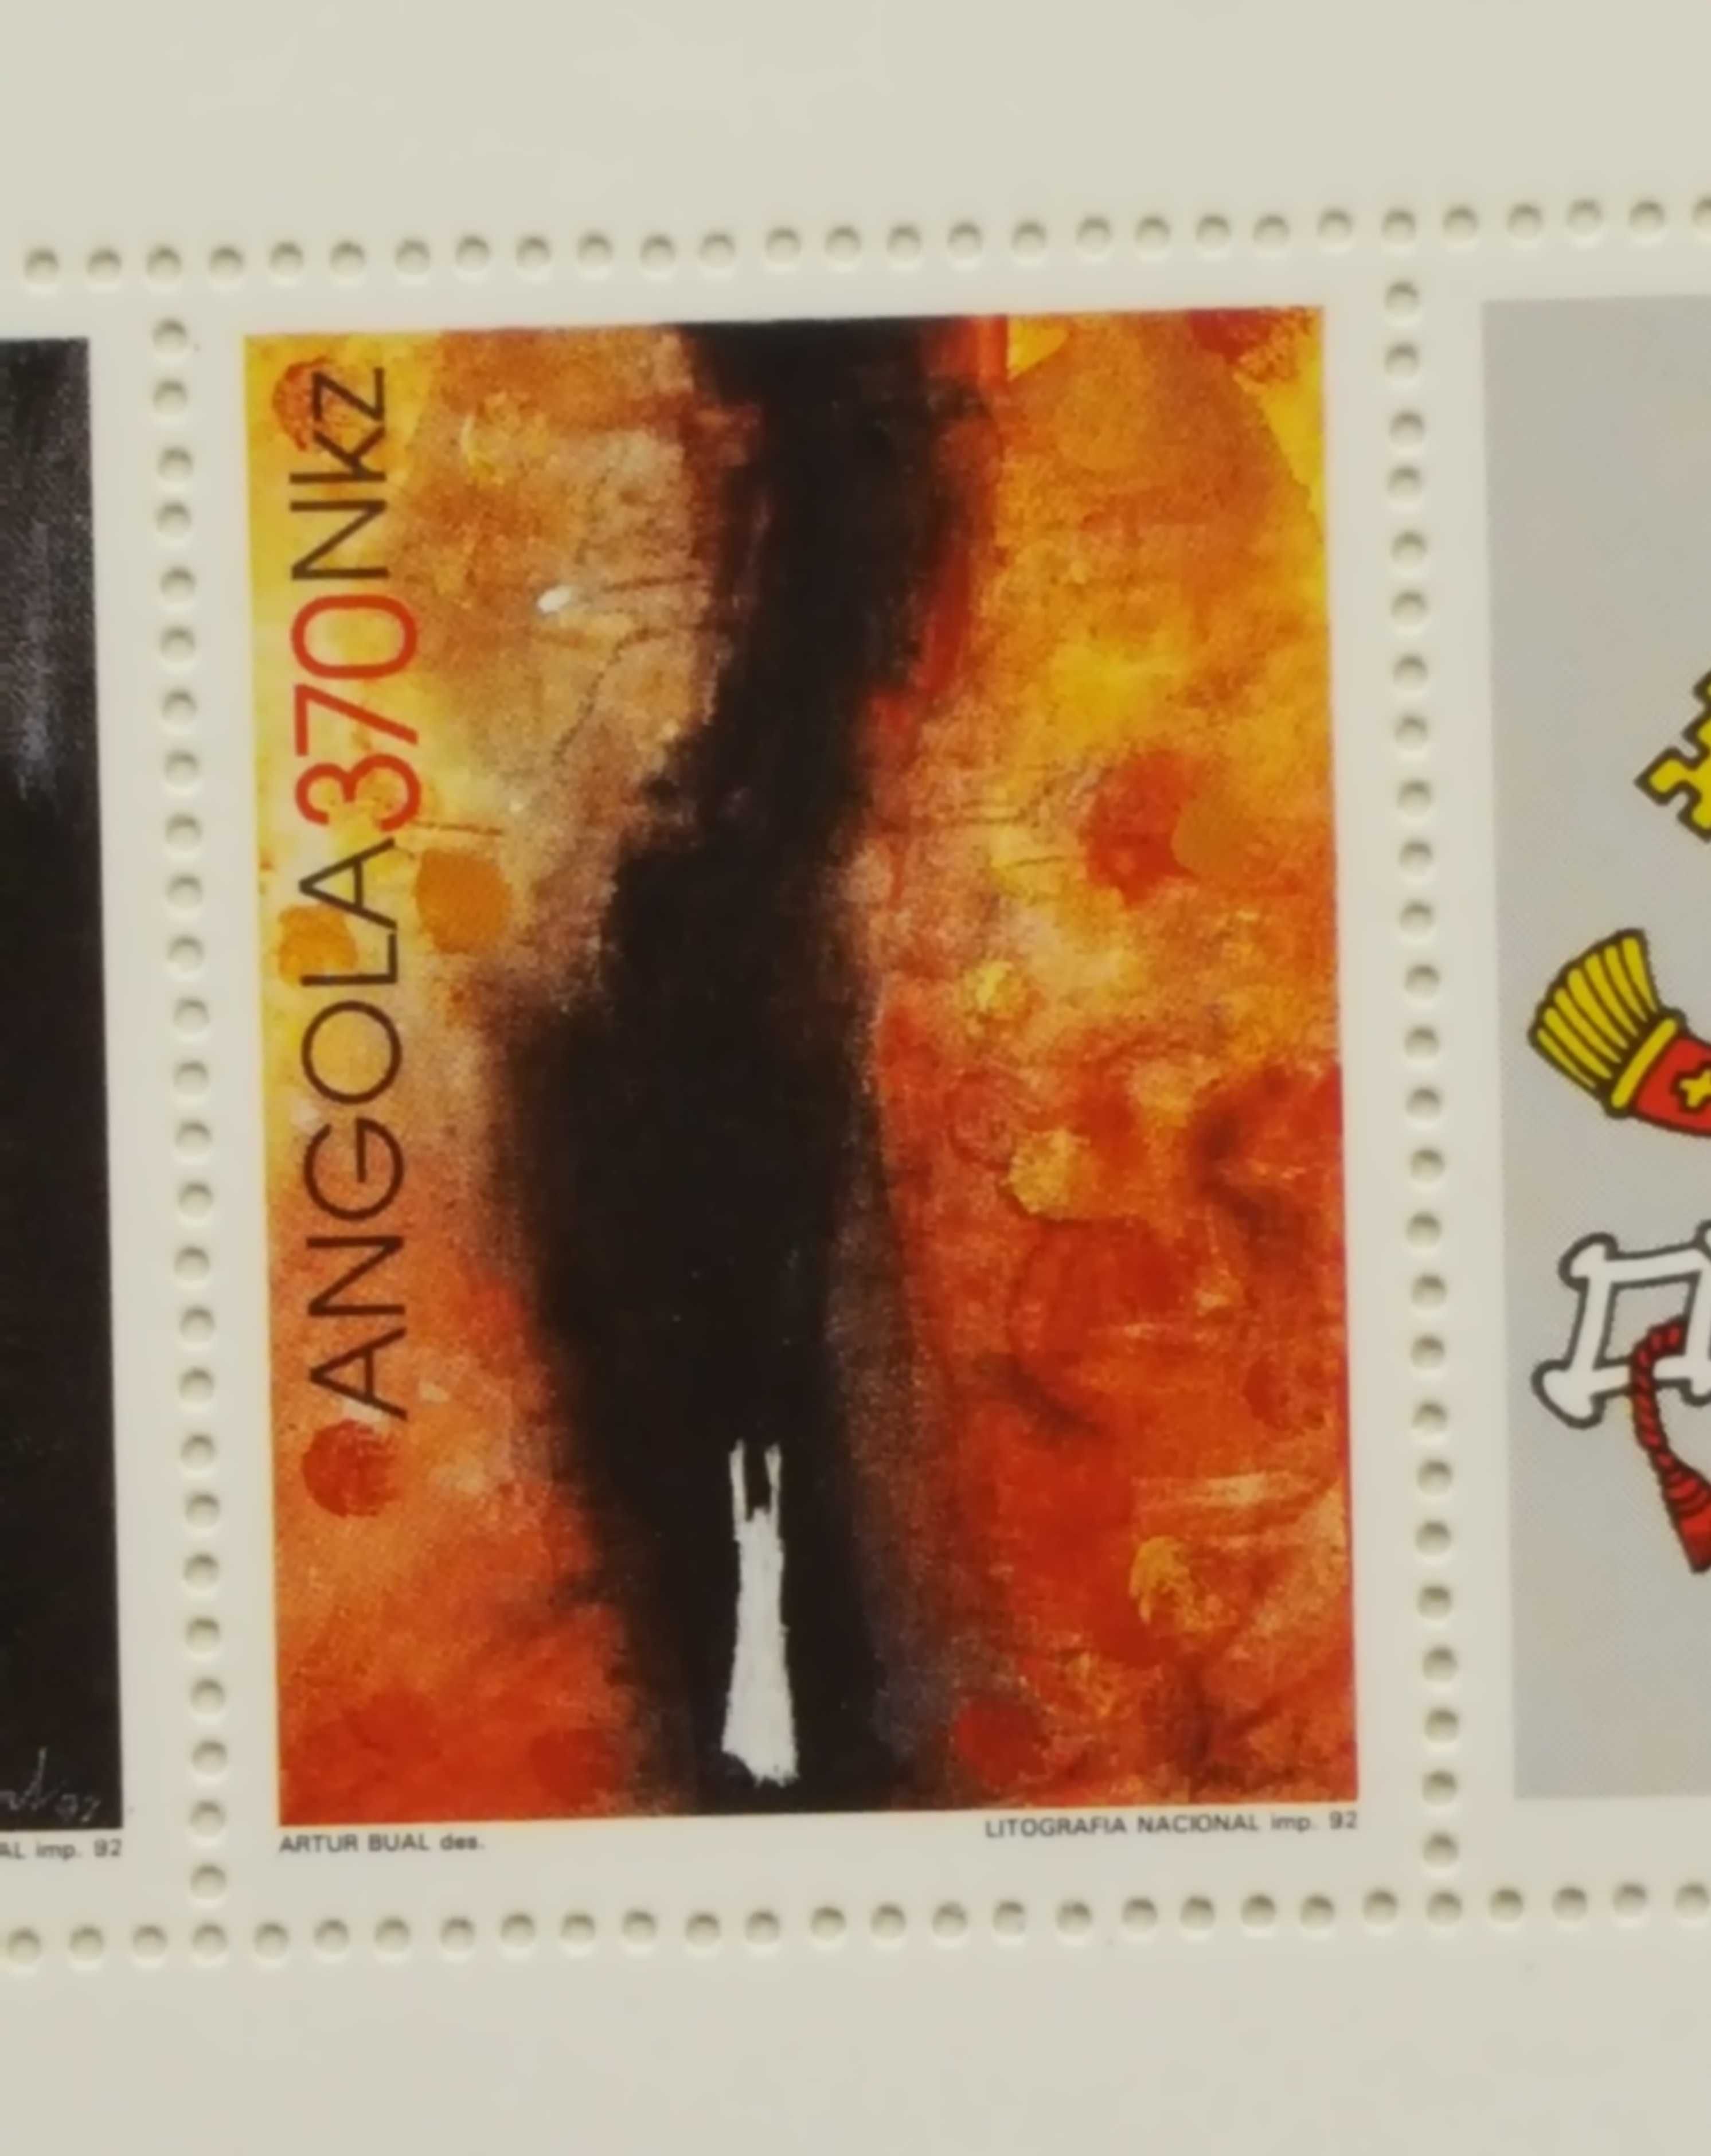 4 selos da visita do papa a Angola. Folha original, completa, numerada